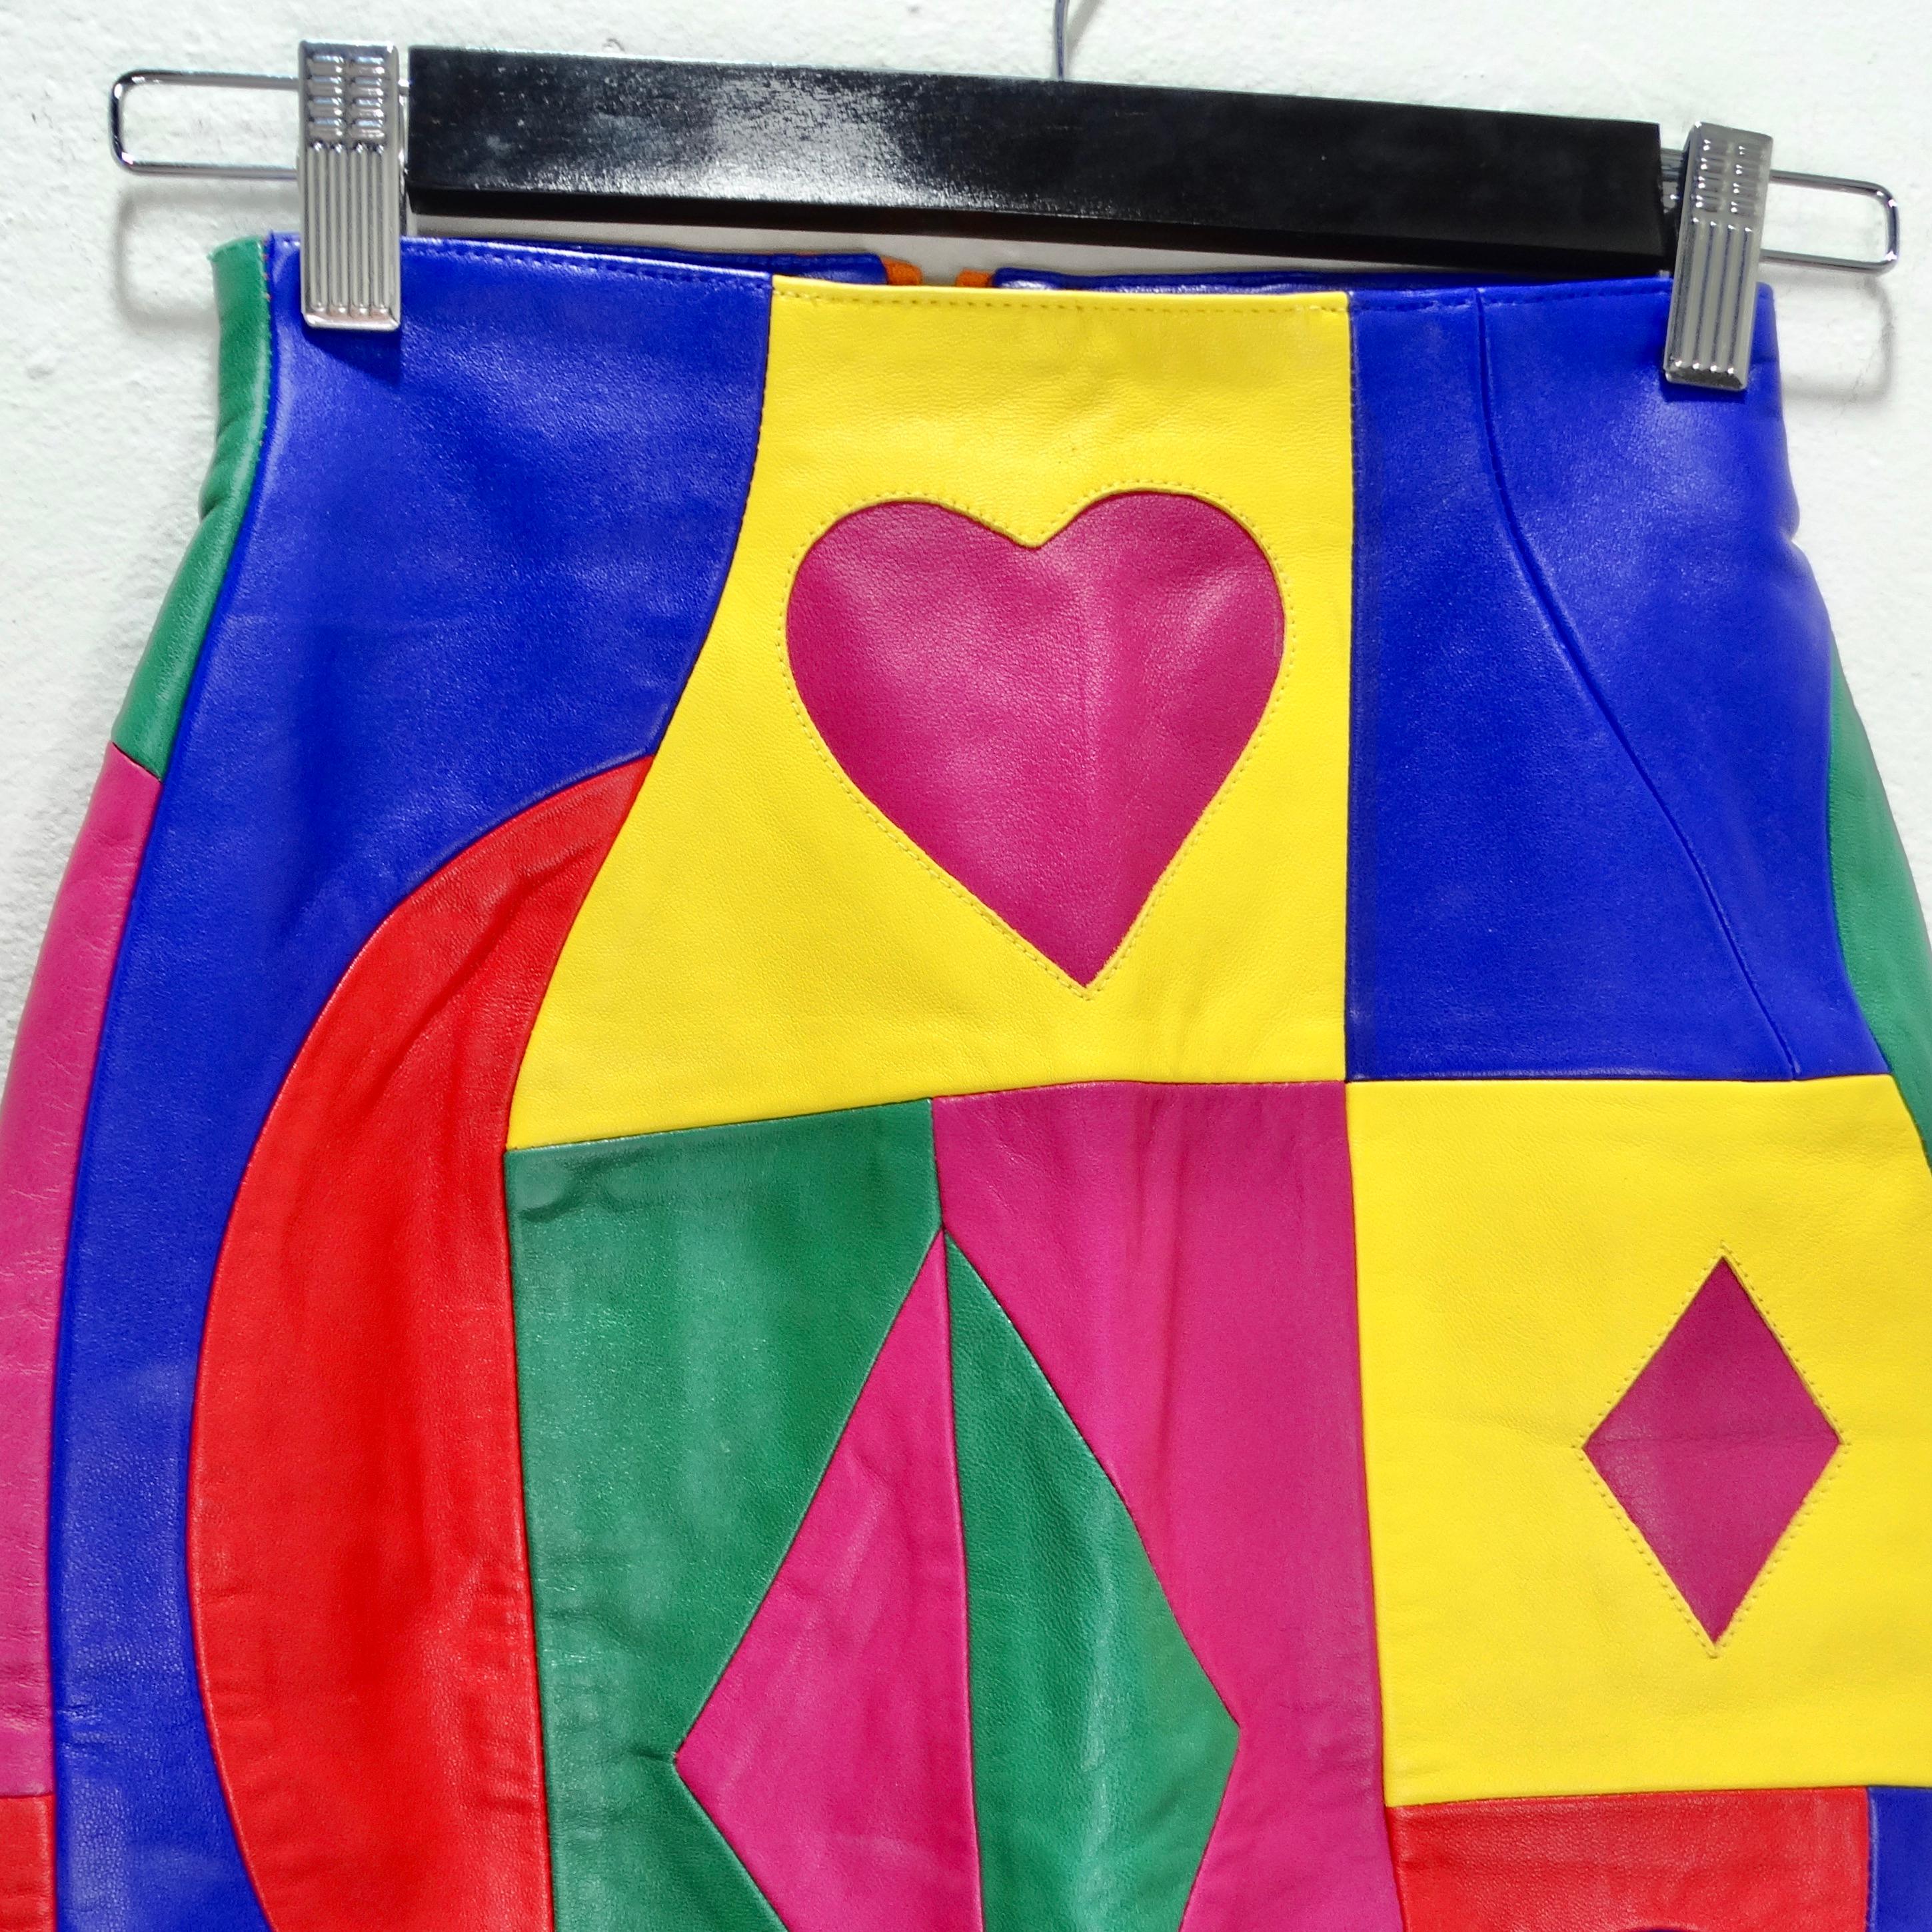 Der Michael Hoban Multicolor Leather Pencil Skirt aus den 1980er Jahren ist ein echtes Vintage-Schmuckstück, das mit seiner lebhaften Persönlichkeit und seinem markanten Design die Zeit überdauert. Mit einem Kaleidoskop aus mehrfarbigen